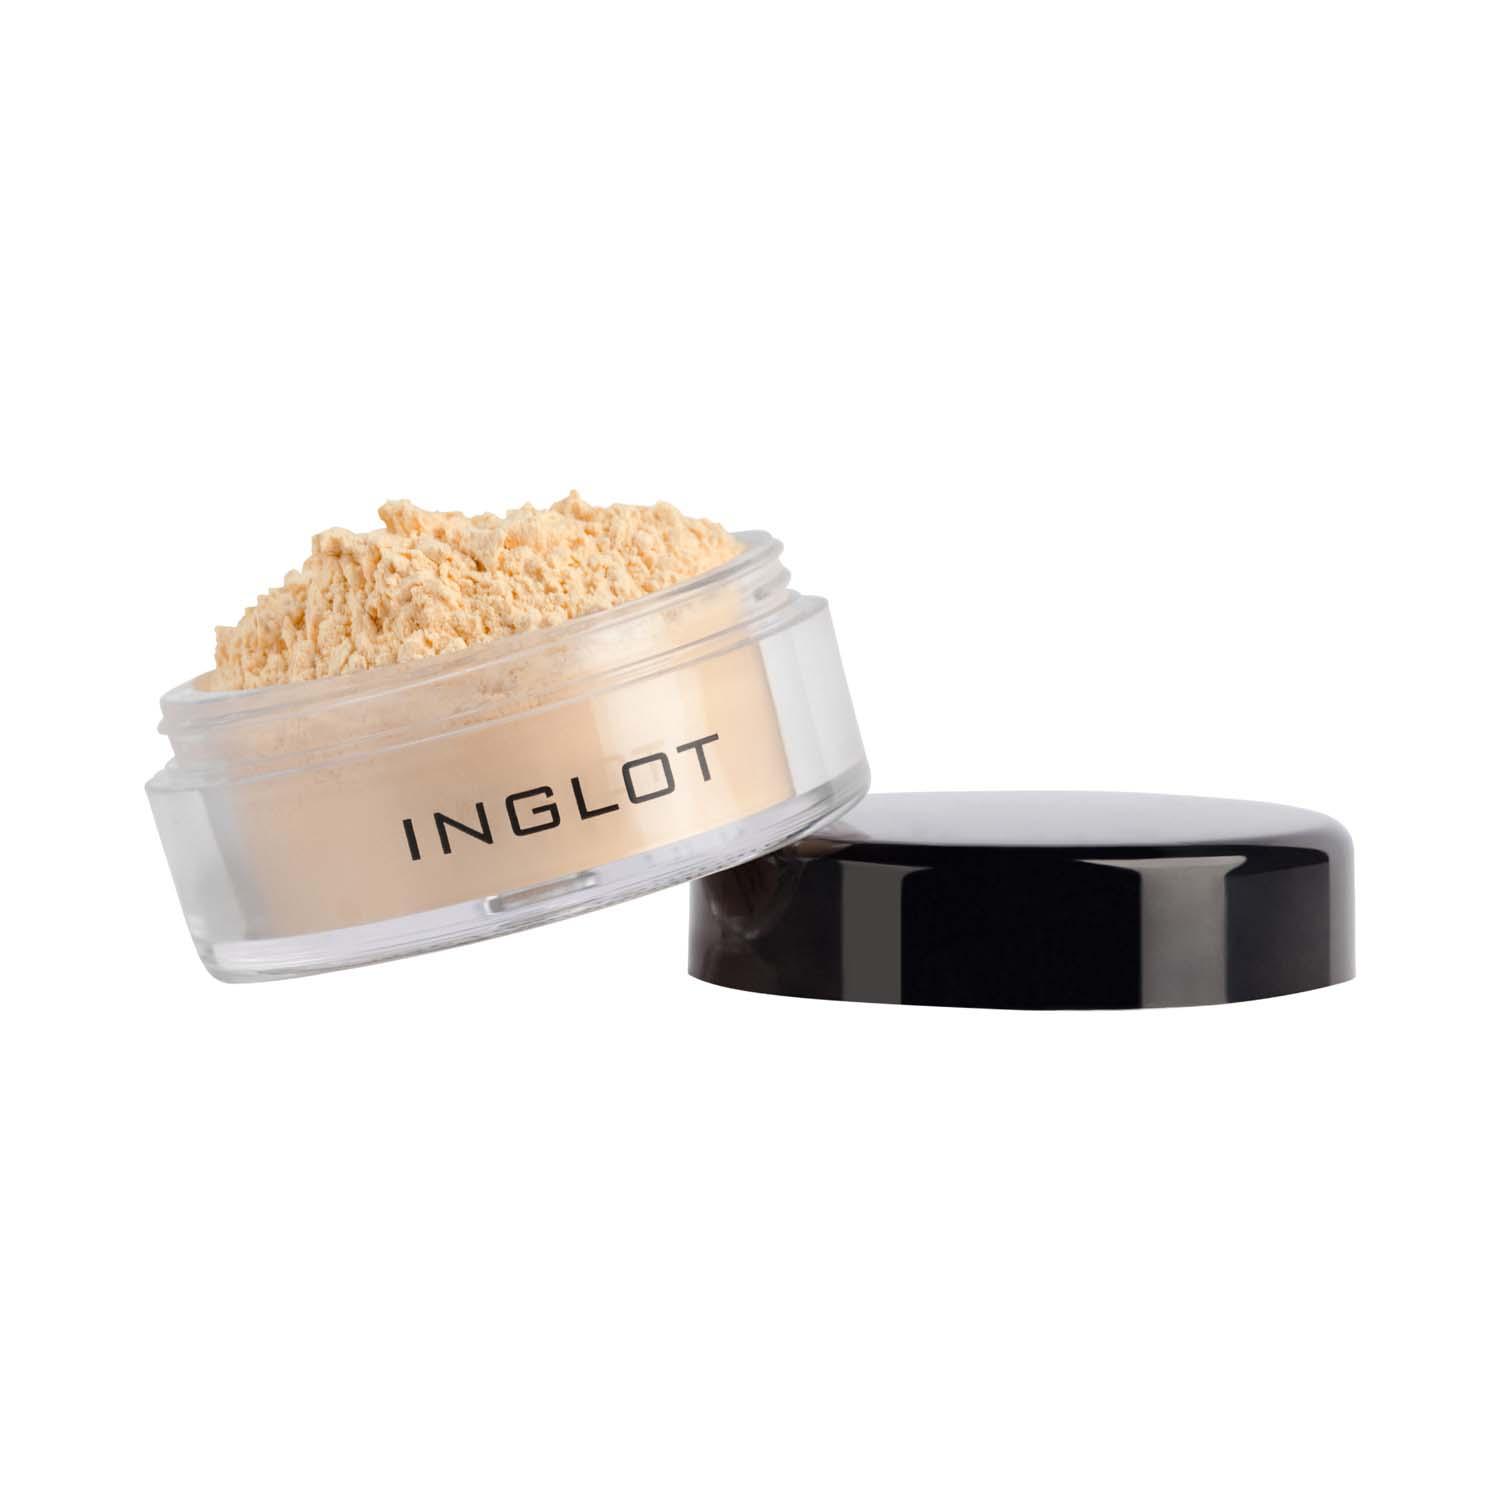 INGLOT | INGLOT Translucent Loose Setting Powder - 218 (1.5 g)